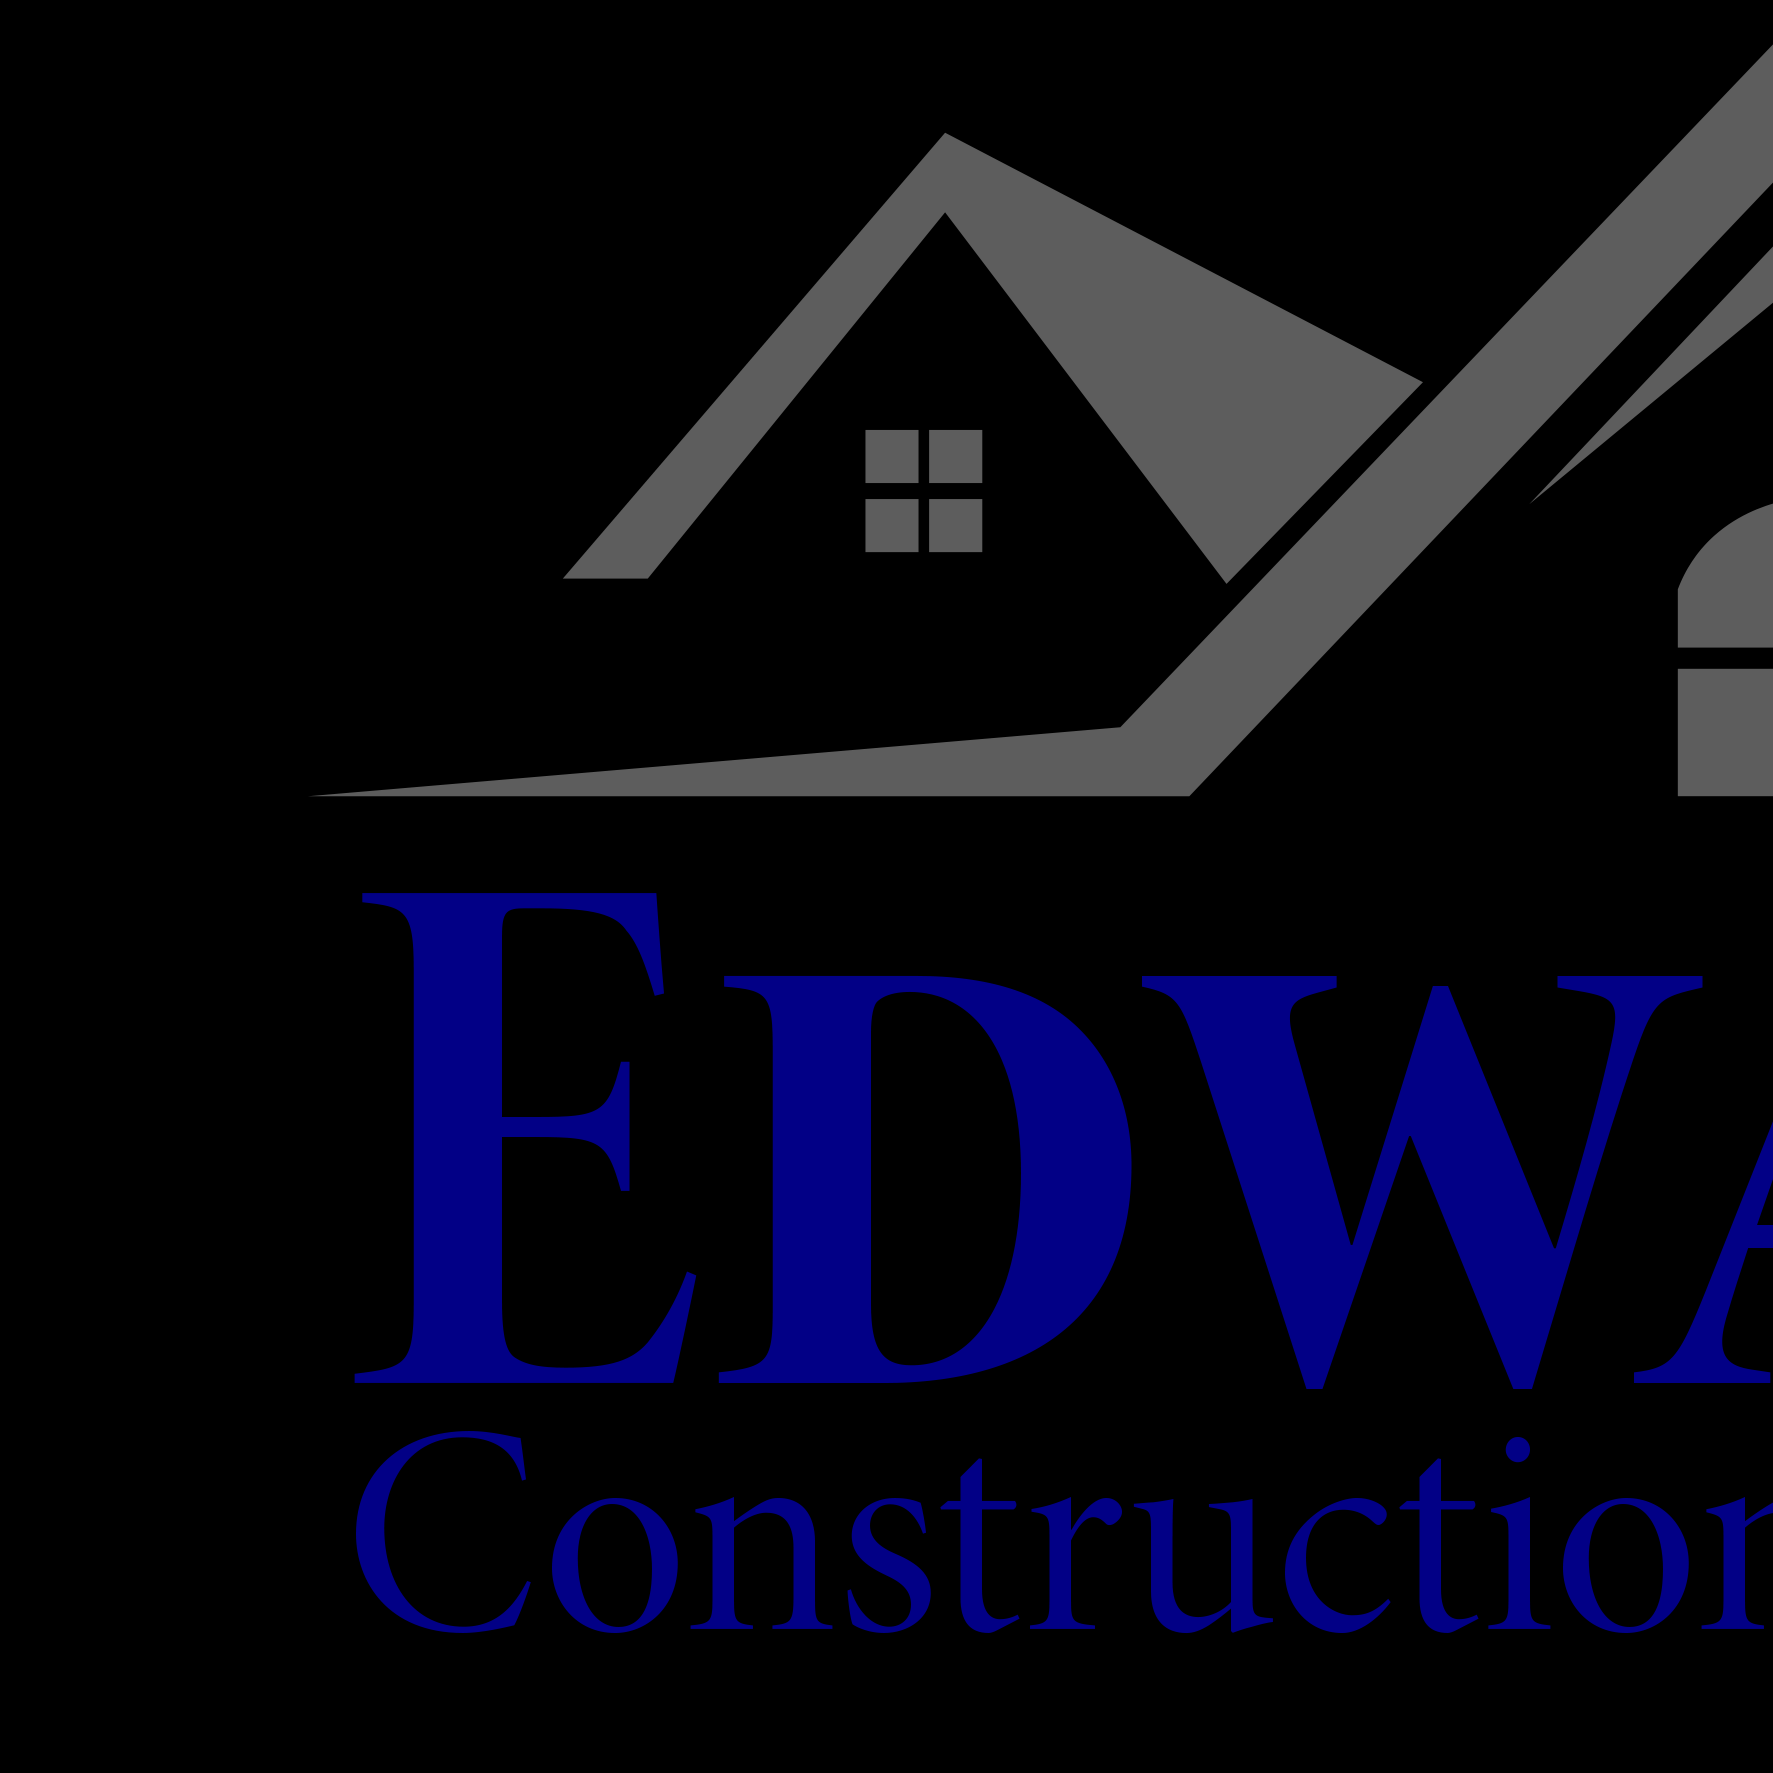 EdwardsConstructiongroup